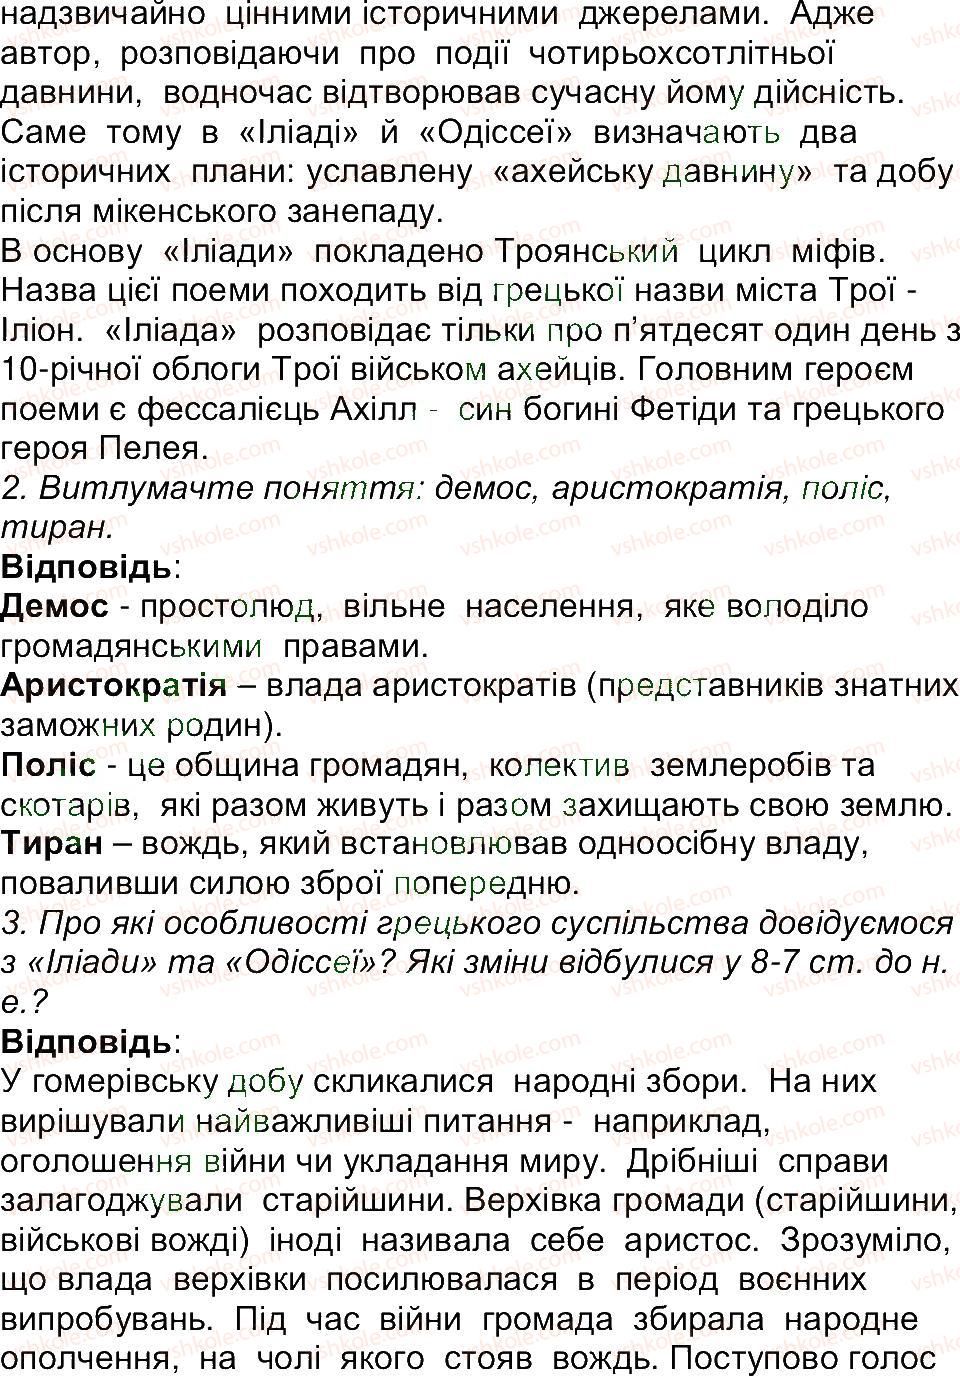 6-istoriya-og-bandrovskij-vs-vlasov-2014--storinki-143200-143-rnd7151.jpg